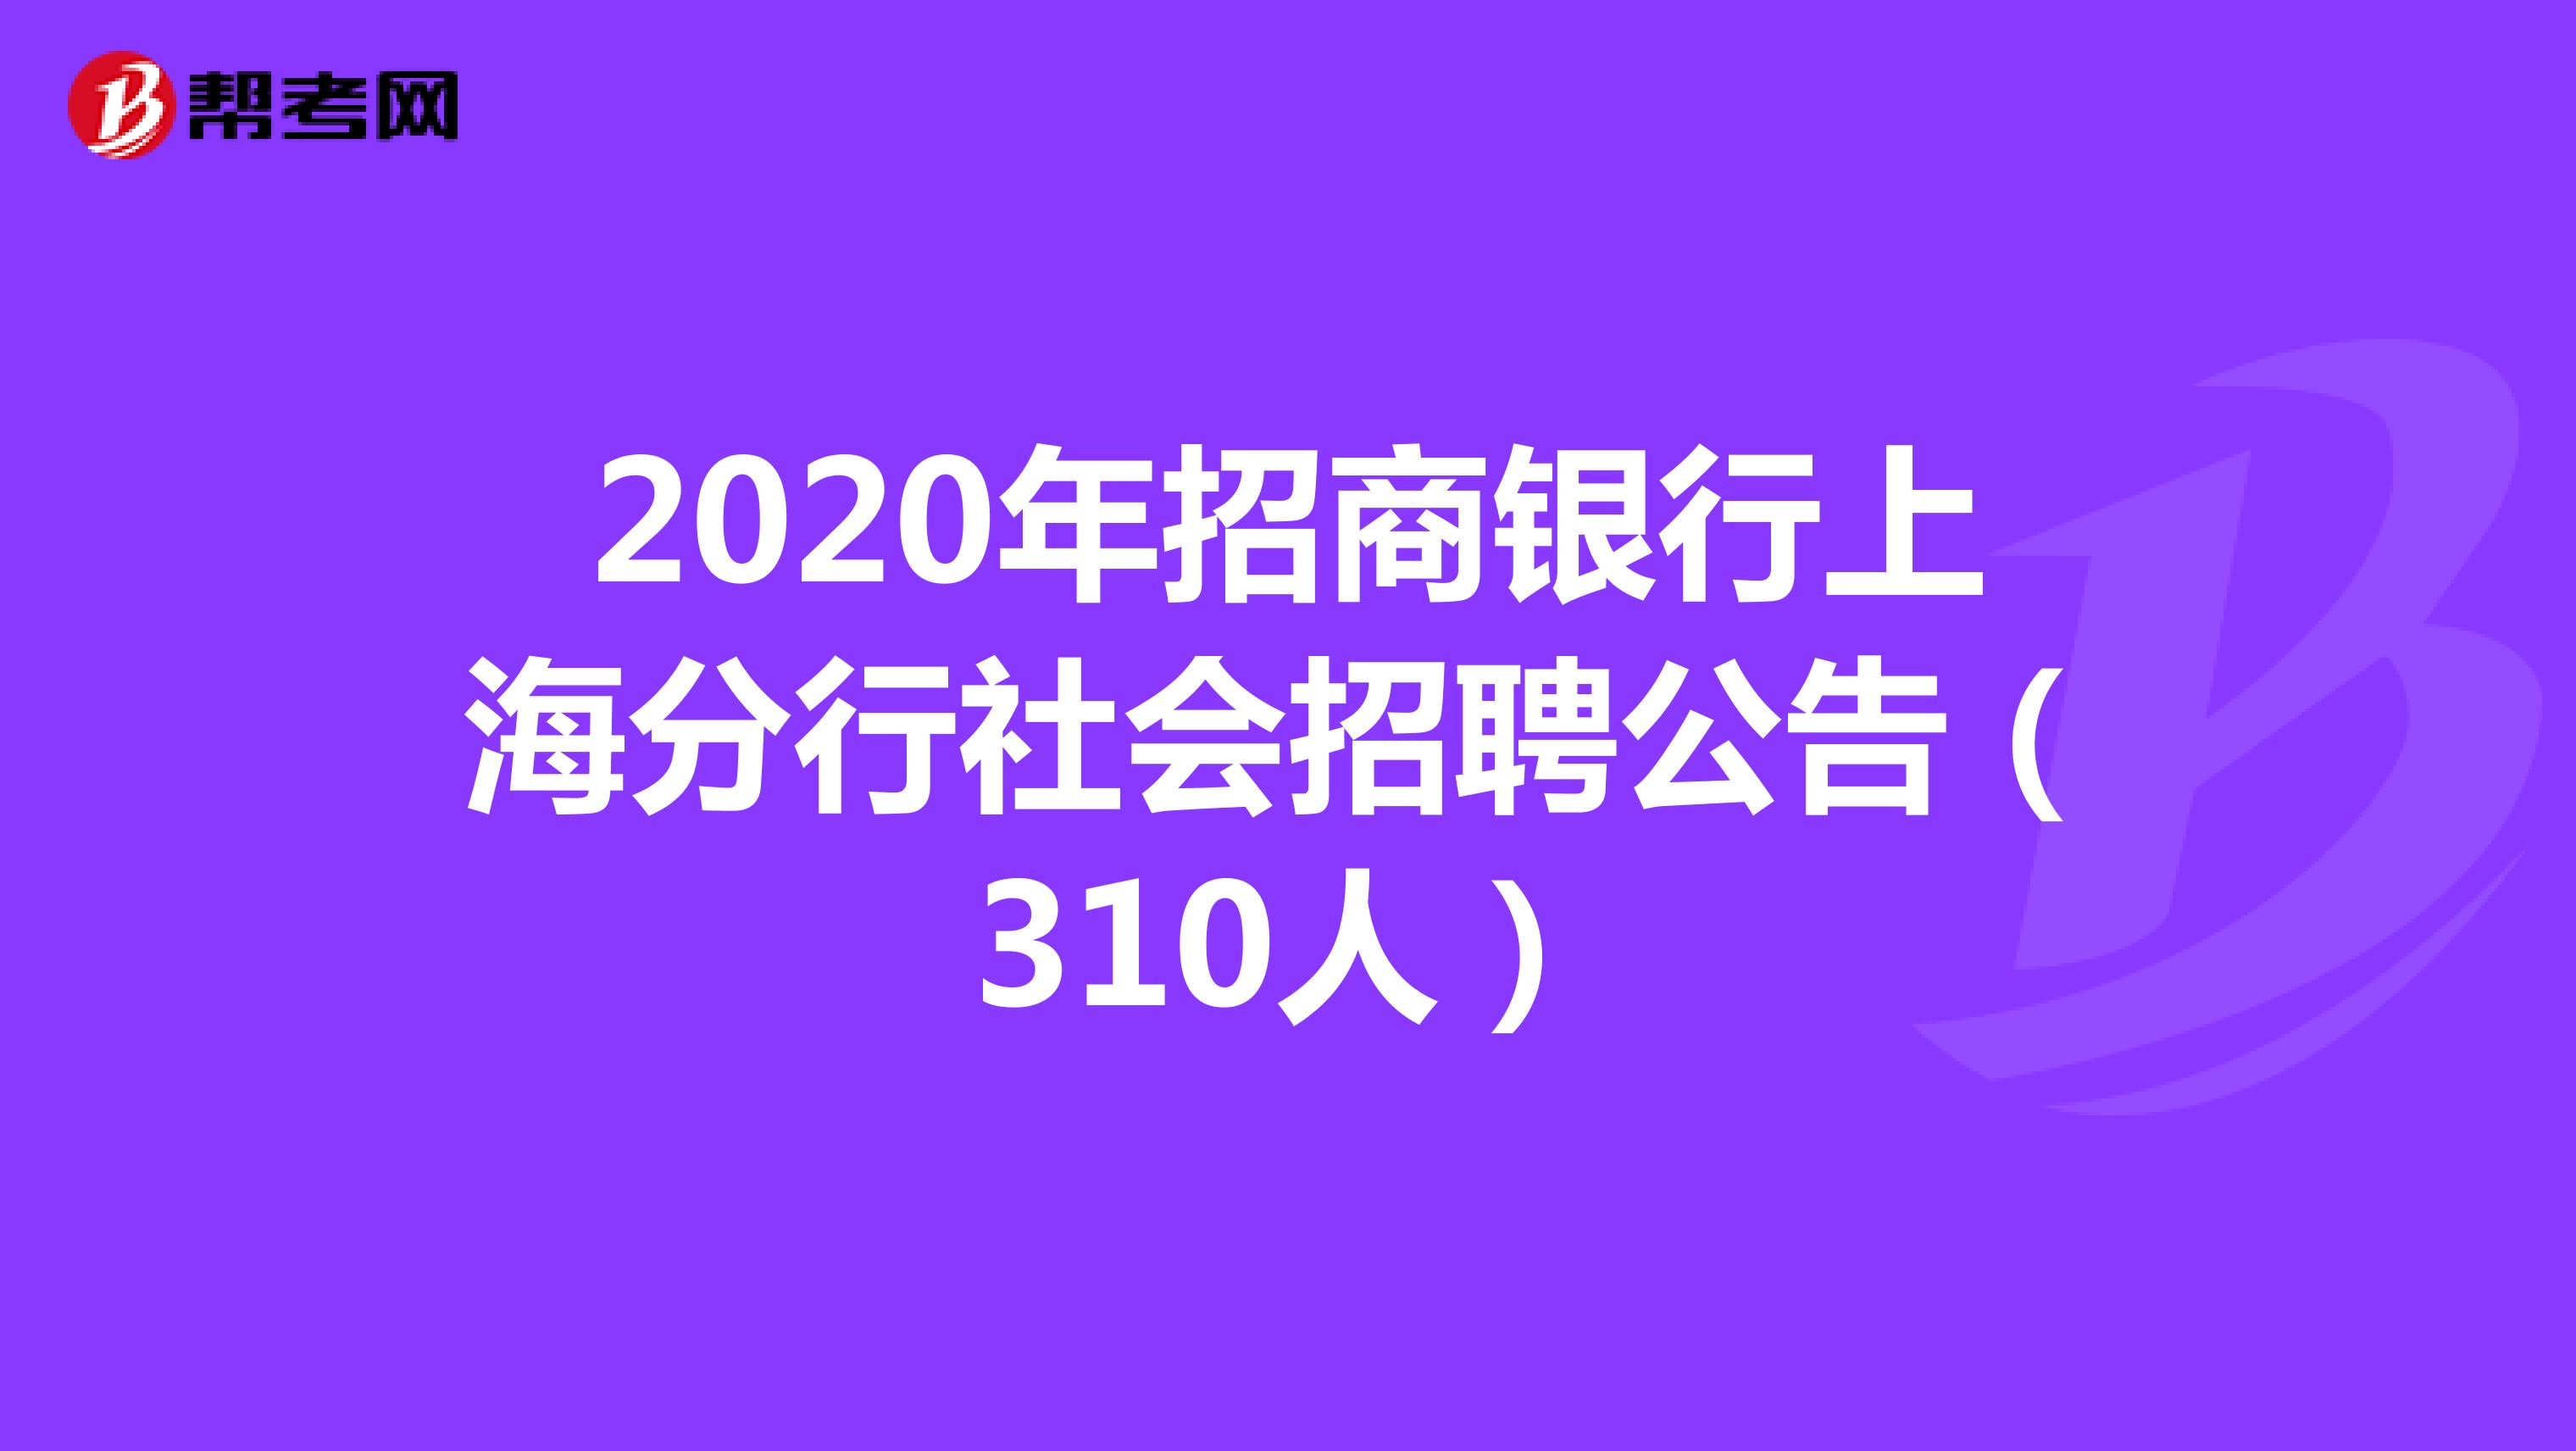 2020年招商银行上海分行社会招聘公告（310人）